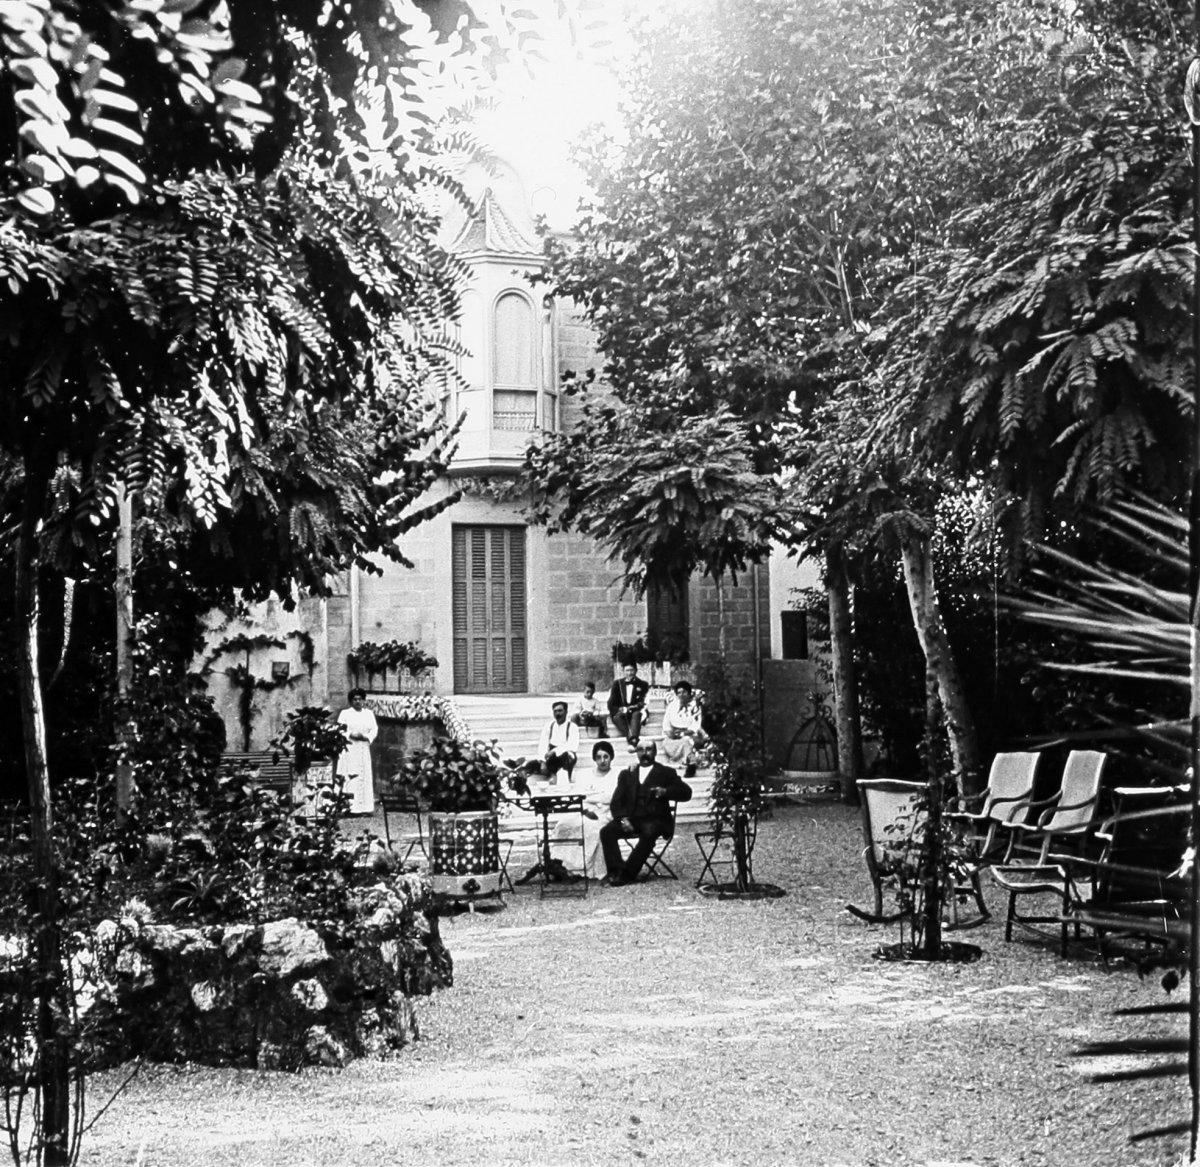 La família Llibre al jardí de la casa d’estiueig de la plaça de Sant Joan a principis del segle XX